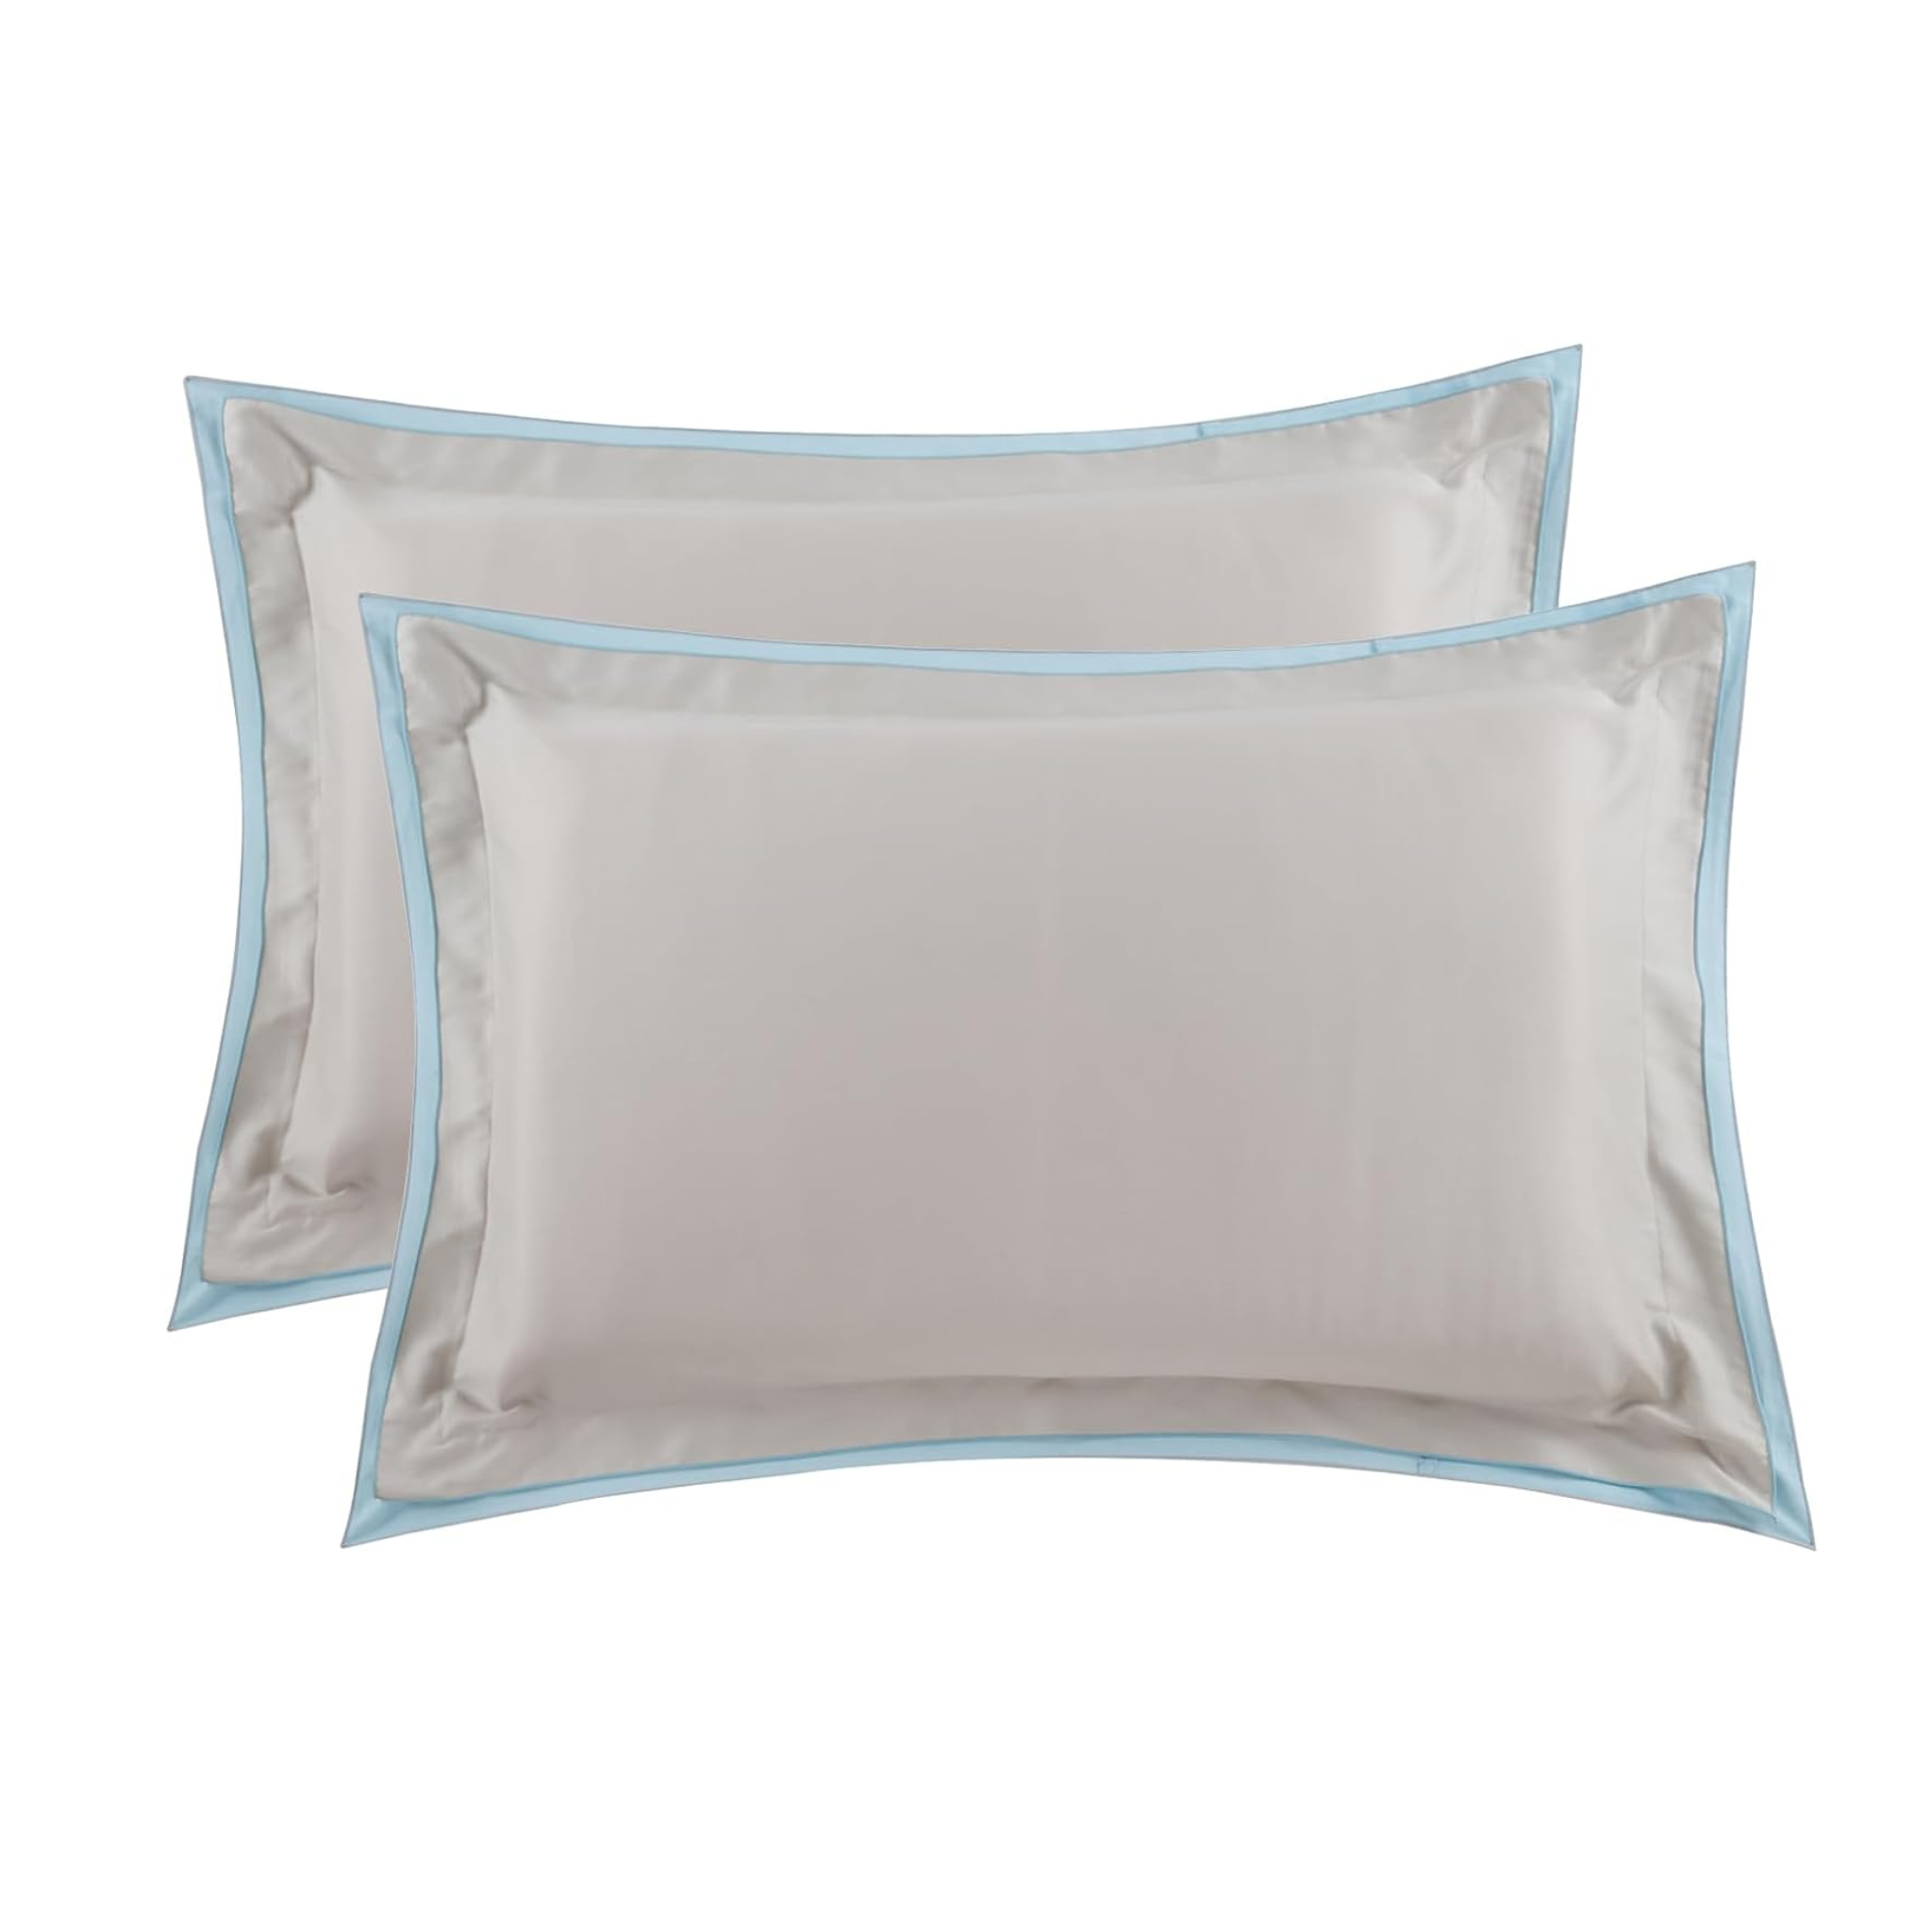 2-Pack Ranznaz Cotton Queen Size Pillow Shams Set